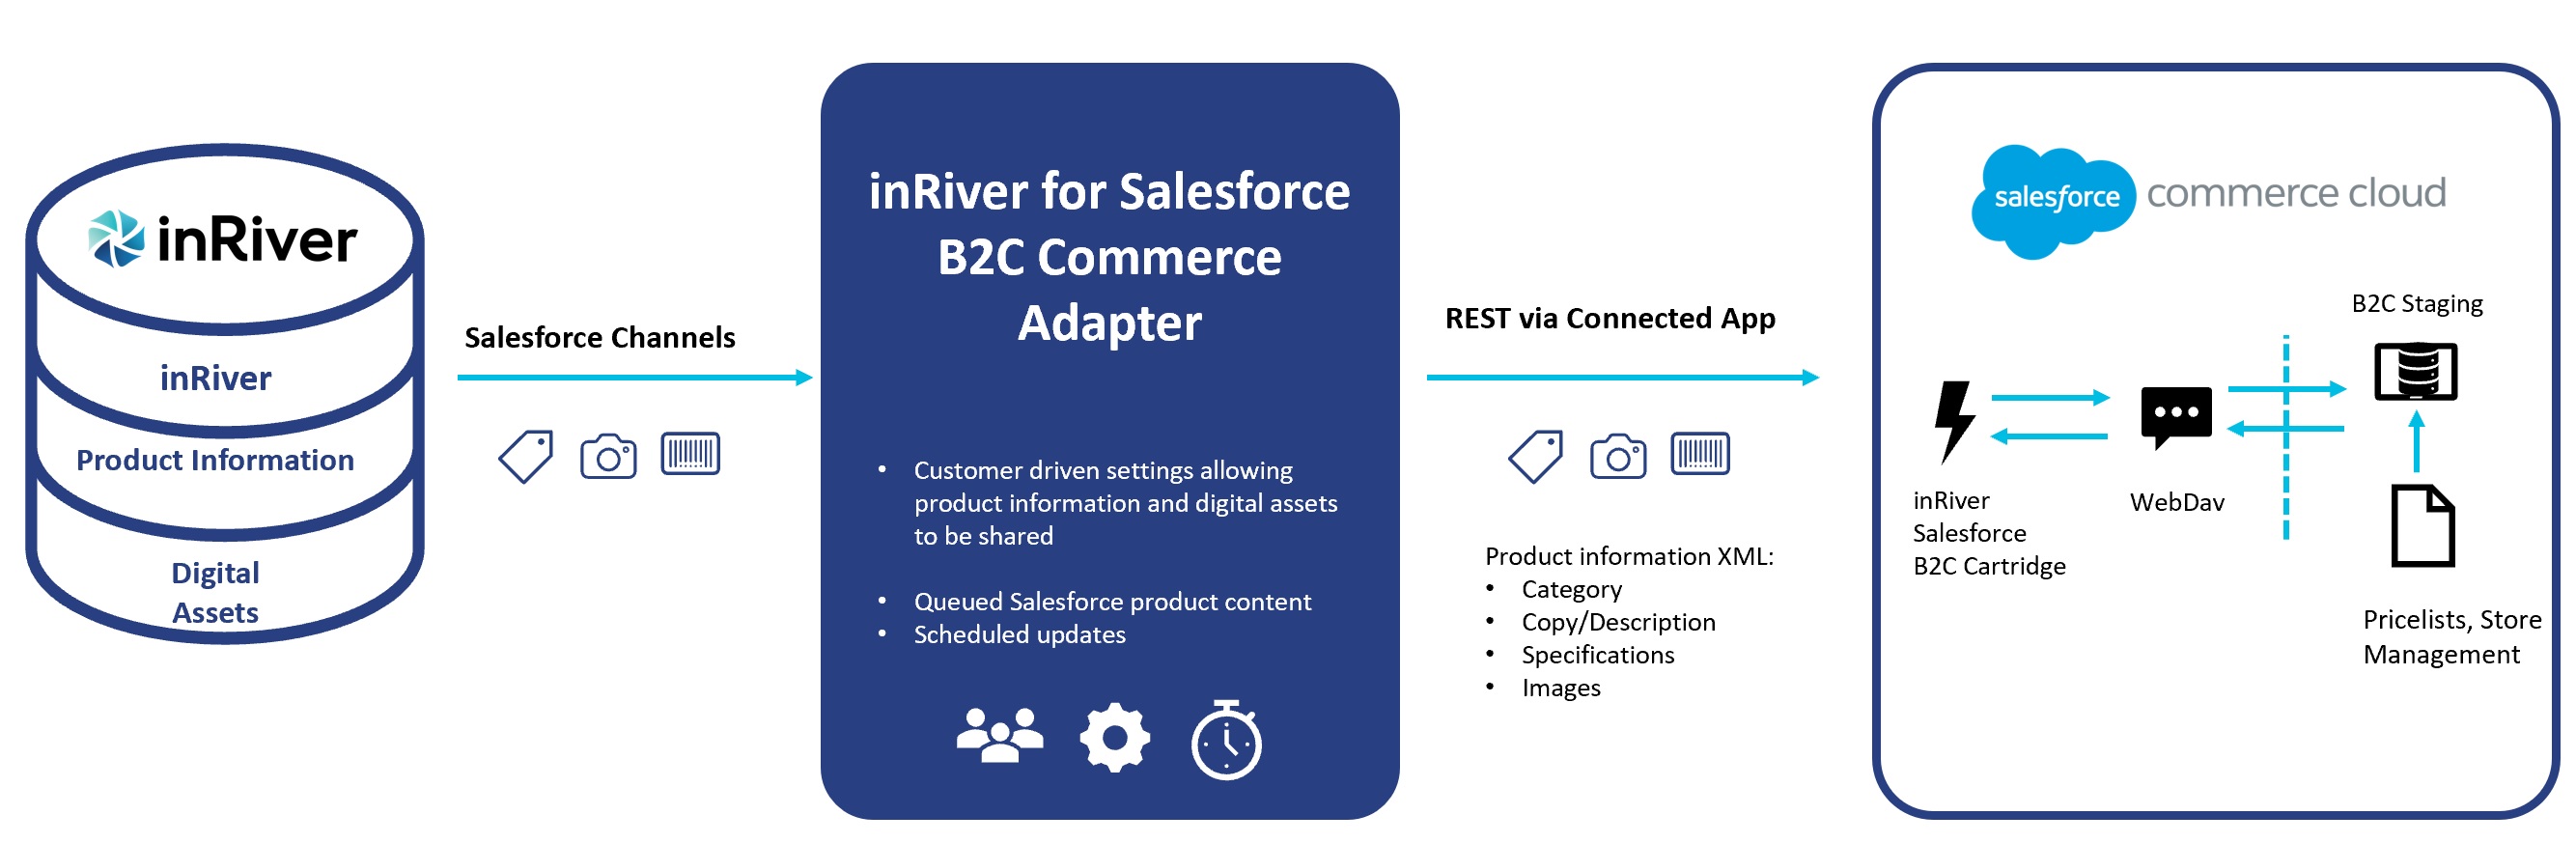 salesforce_B2C_overview.jpg